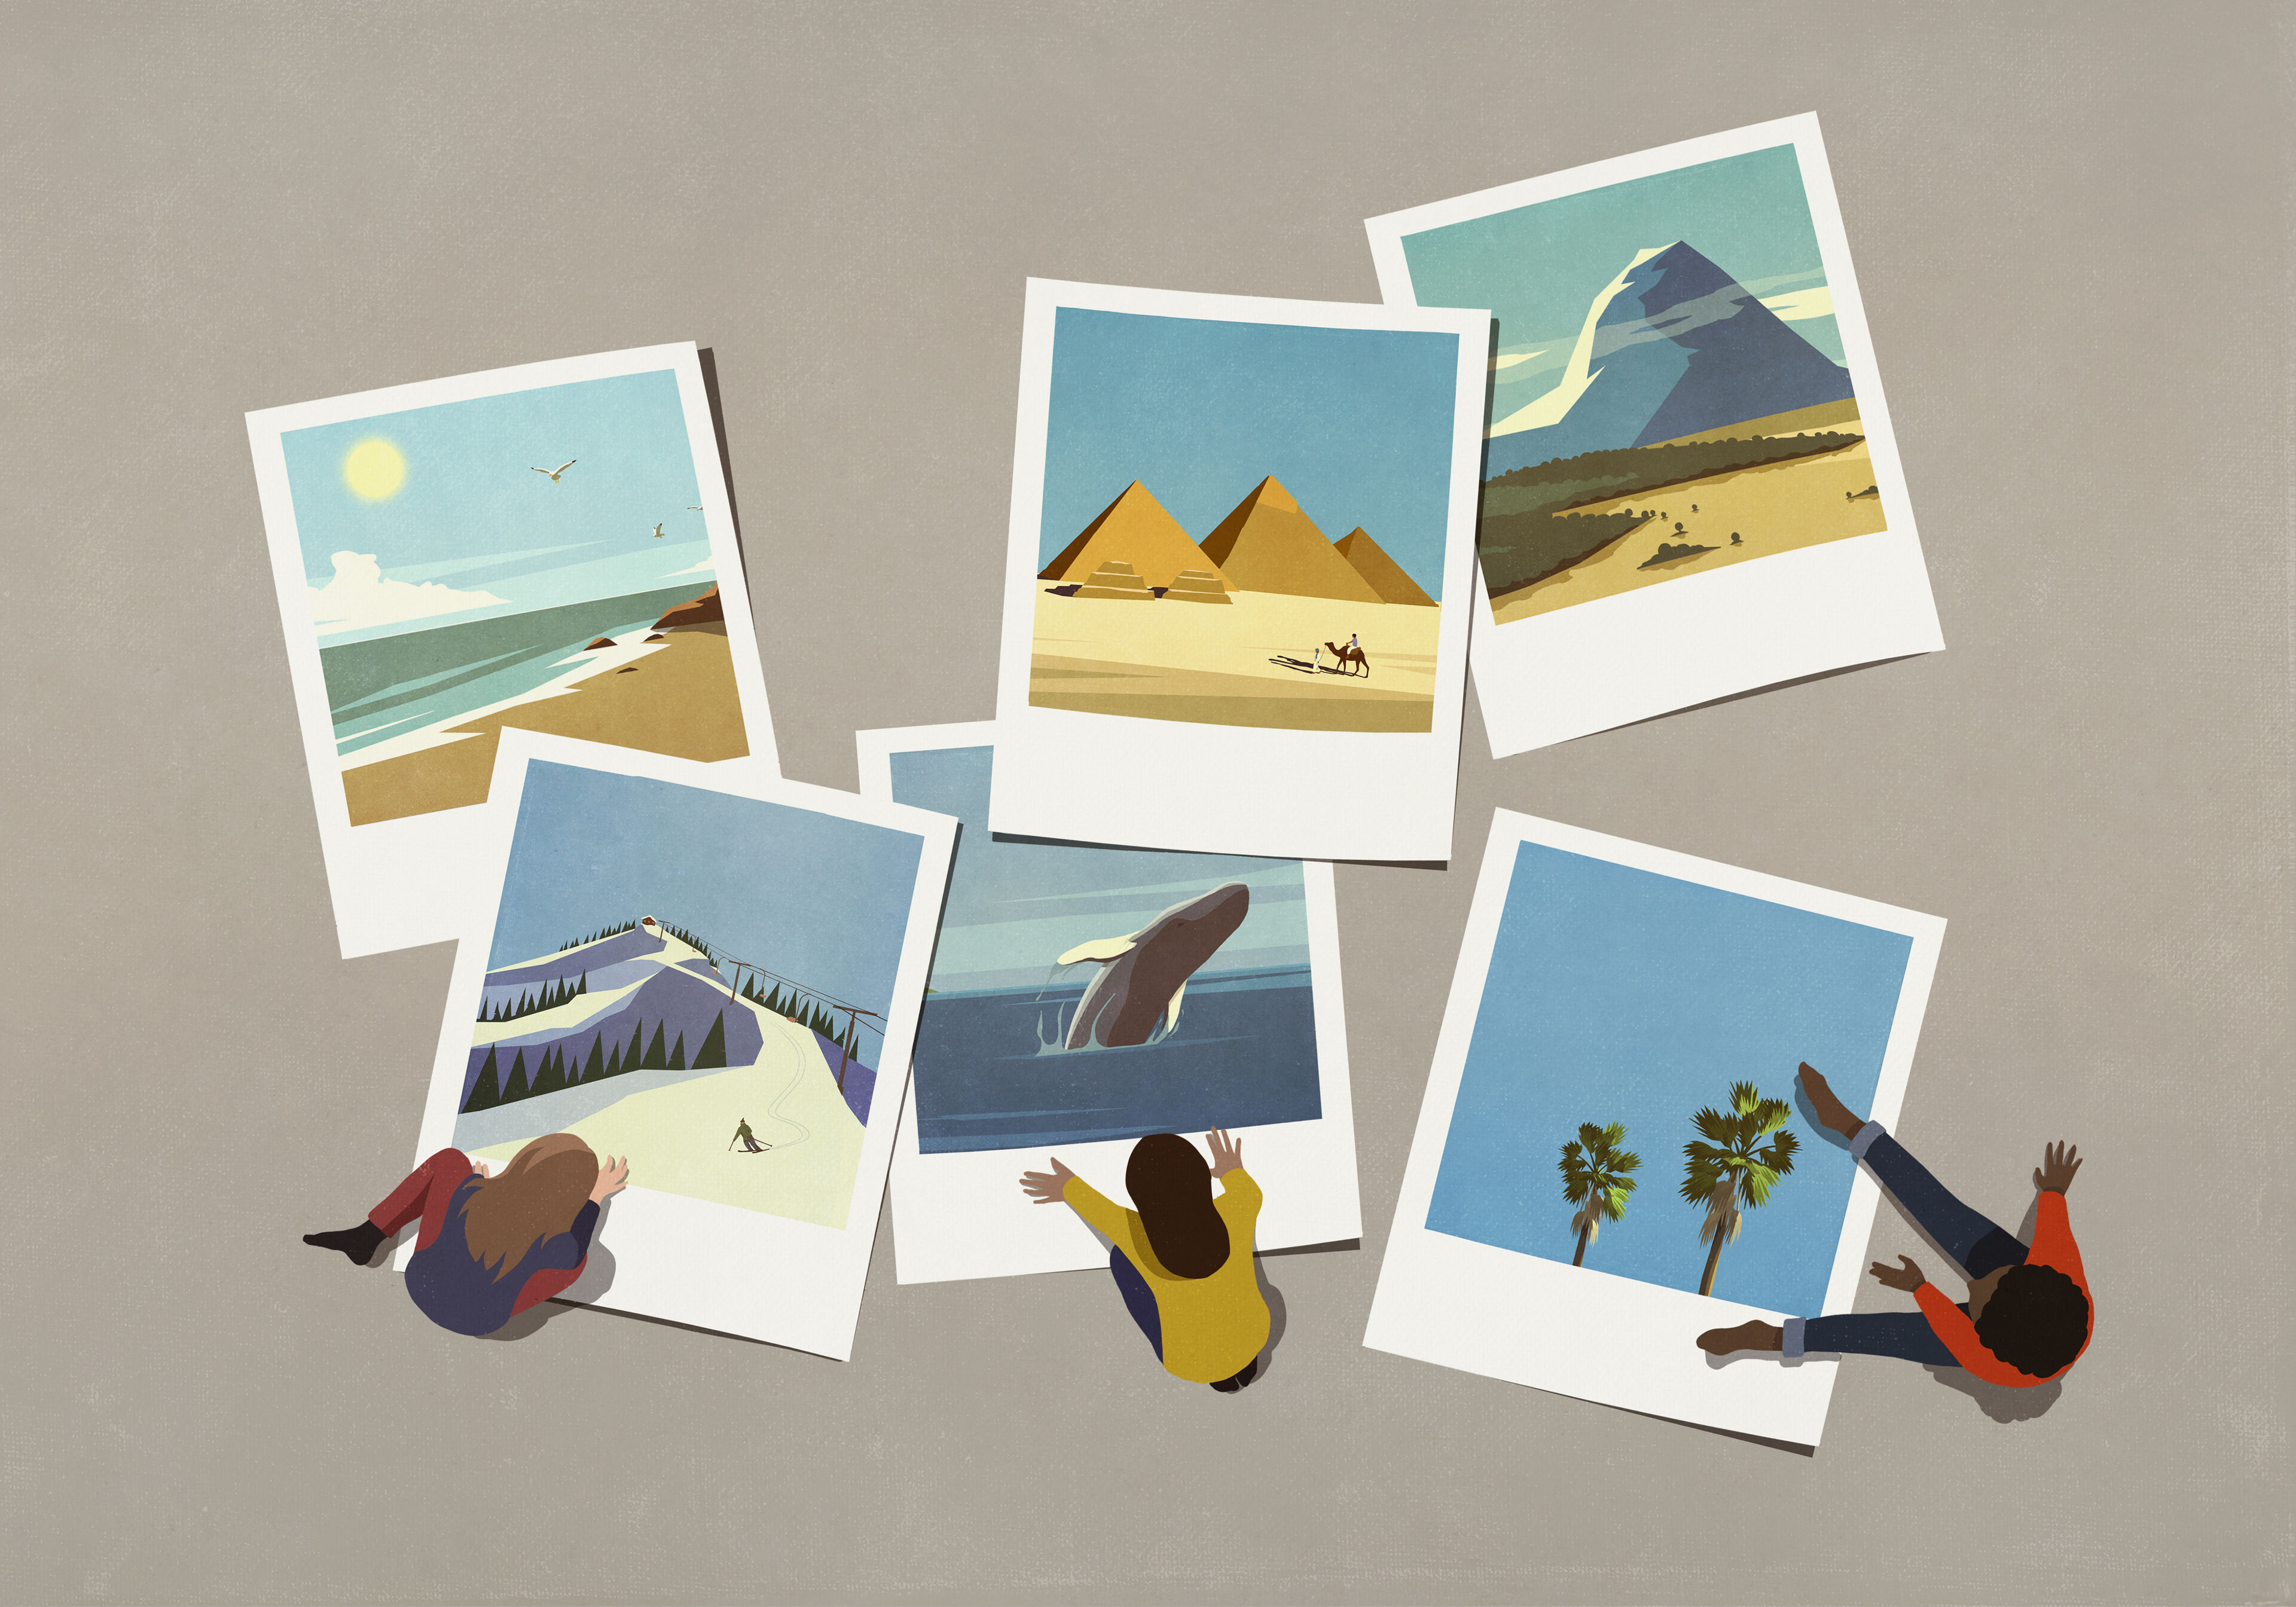 Una serie de instantáneas Polaroid ilustradas que representan diversos destinos de viaje, incluyendo playas, pirámides, montañas y vida silvestre, con tres personas tendidas alrededor, sumergidas en recuerdos.